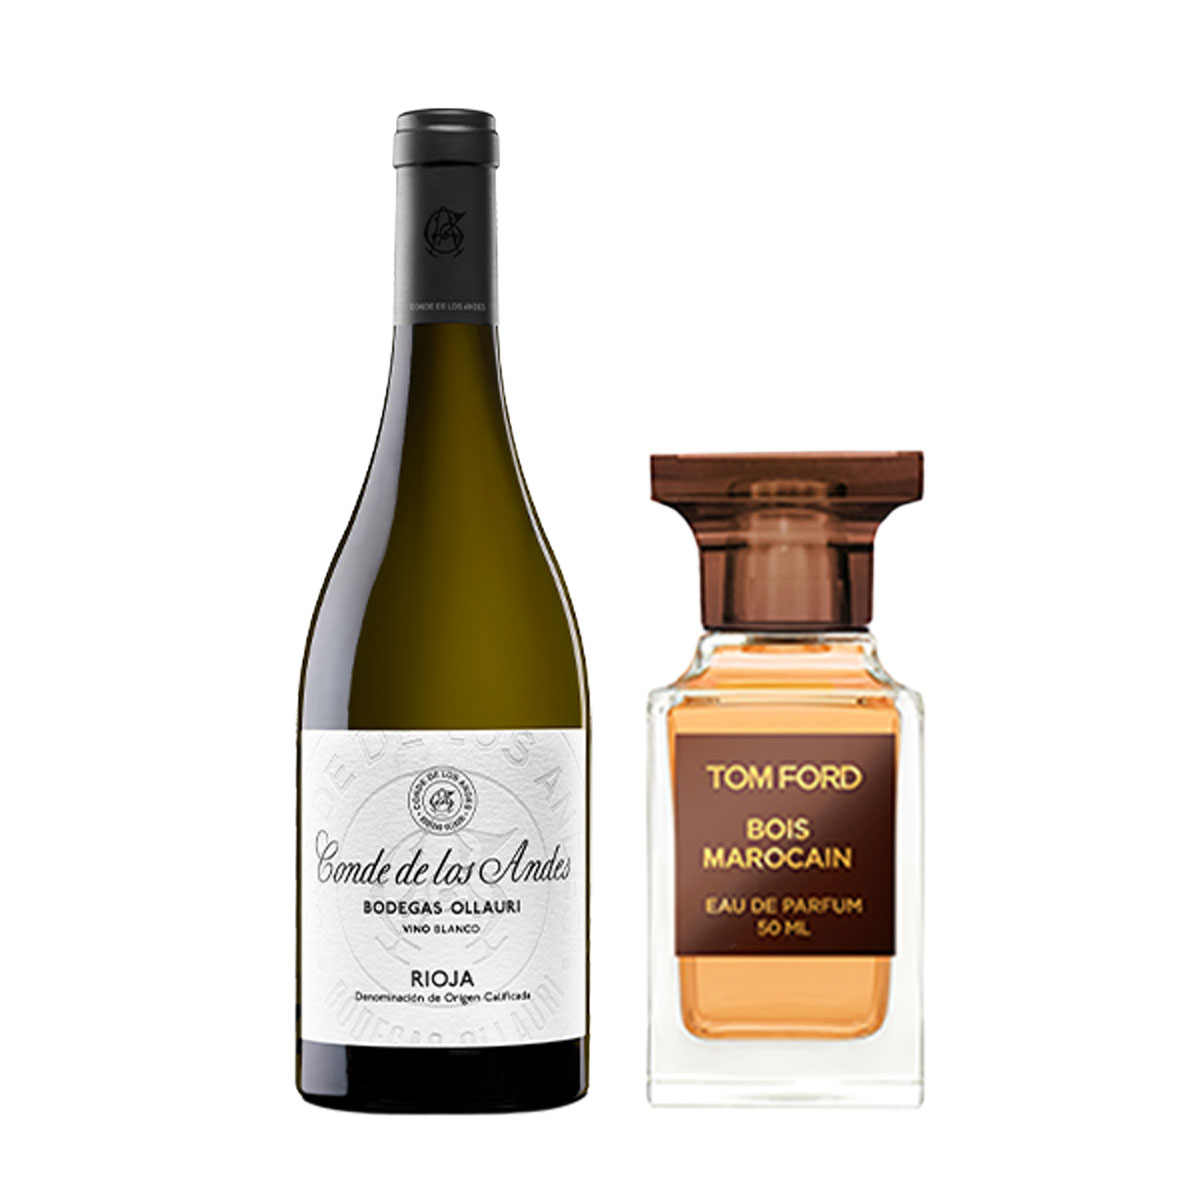 Weinflasche und Tom Ford Parfum